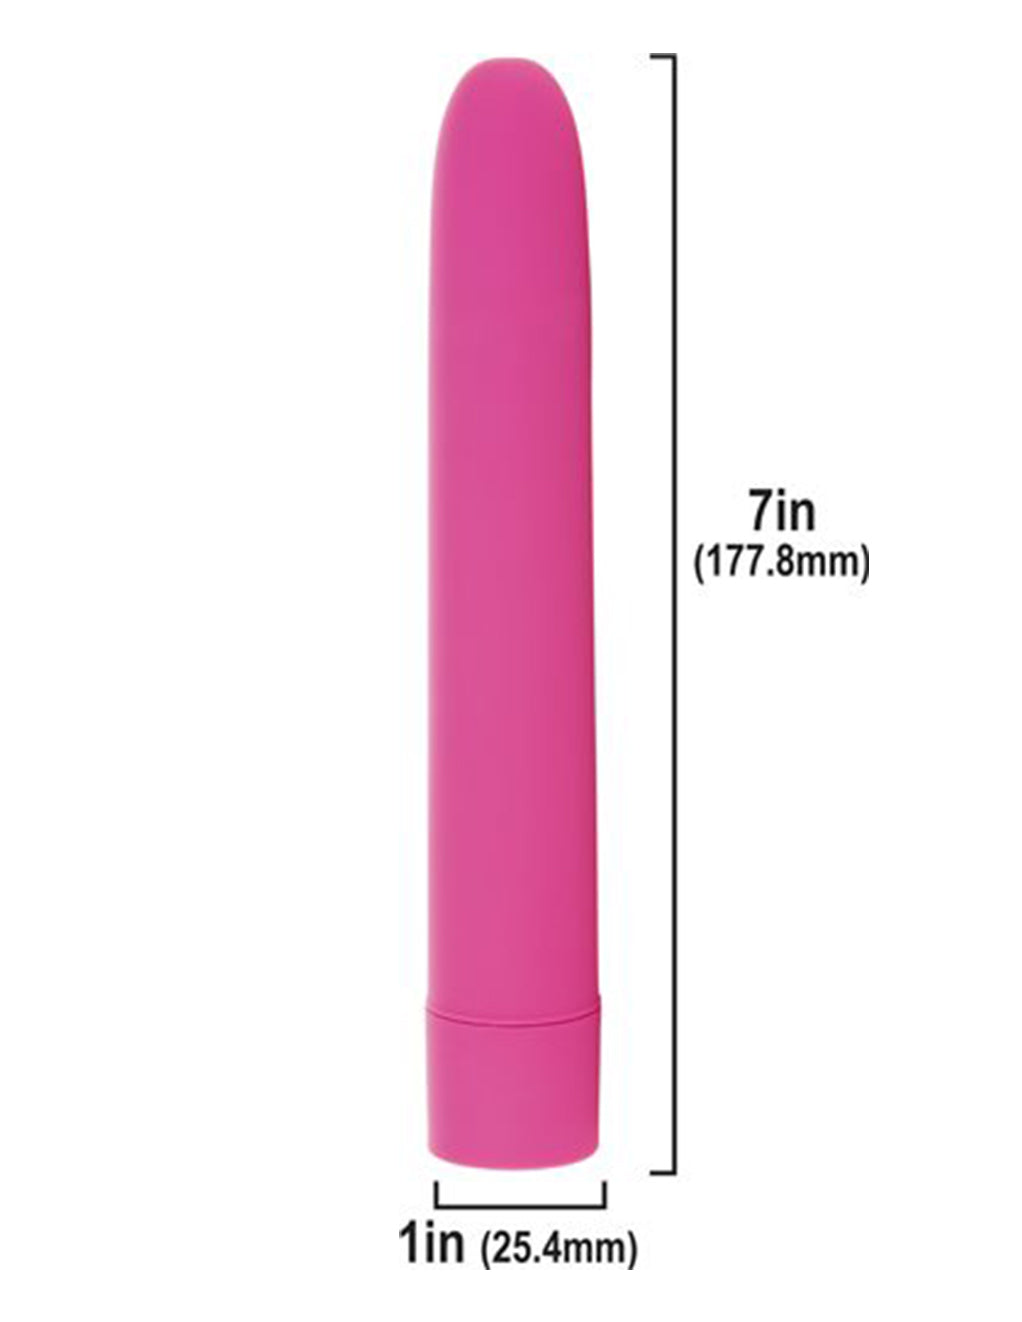 Eezy Pleezy Bullet Vibrator- Pink- Dimensions